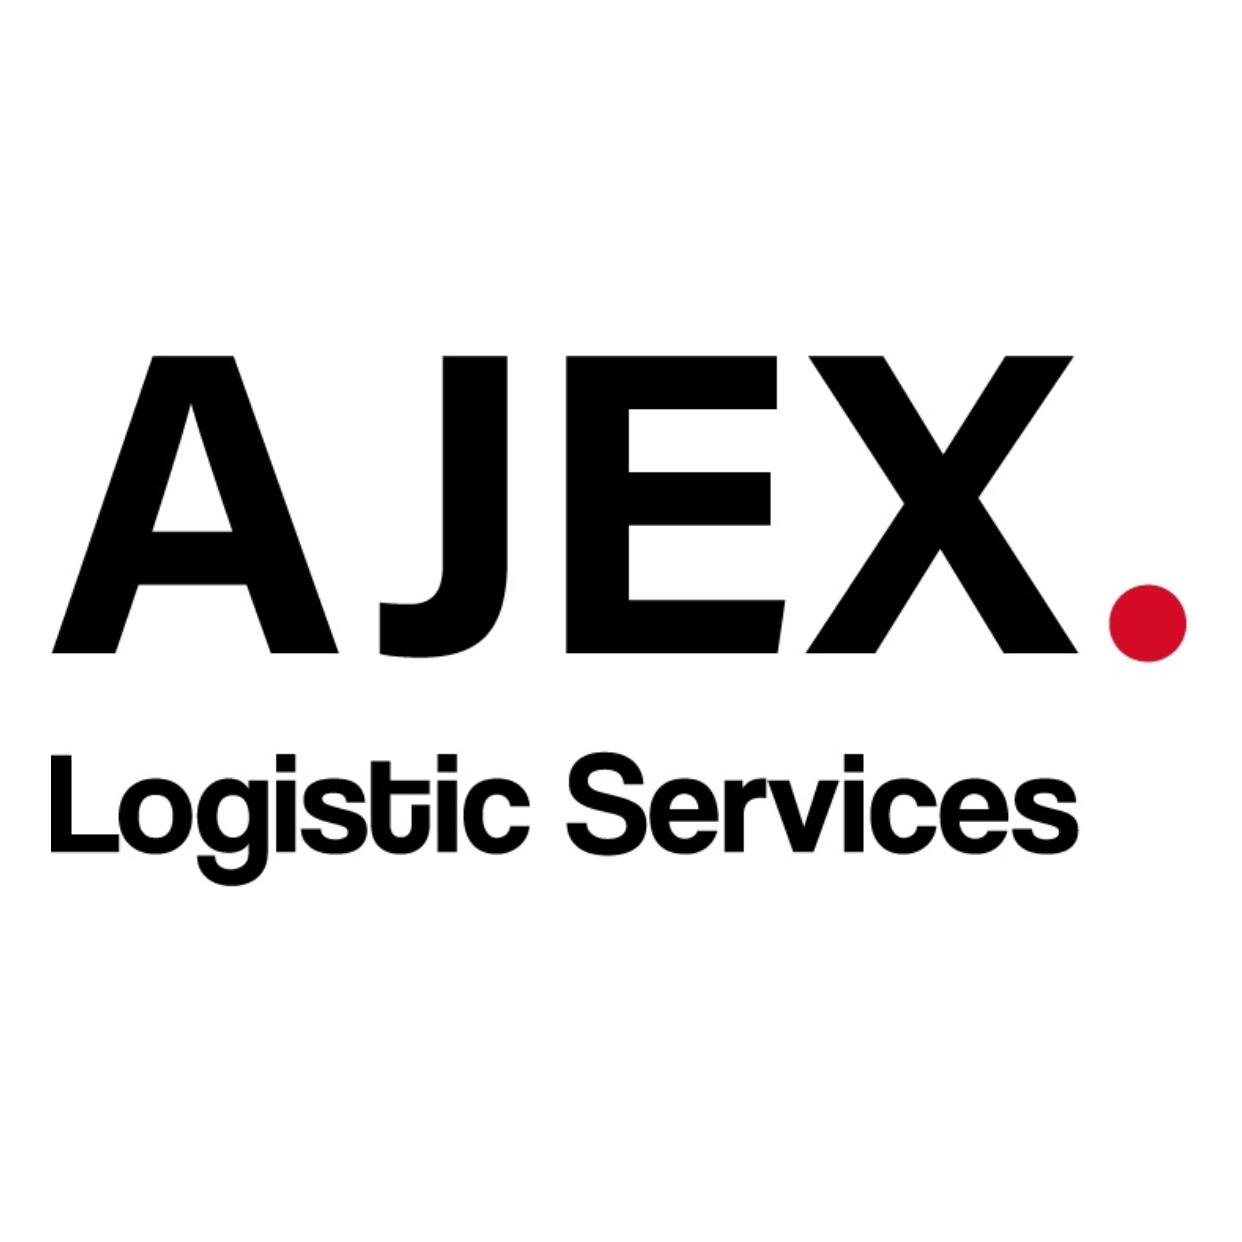 شركة ايجكس للخدمات اللوجستية (AJEX)